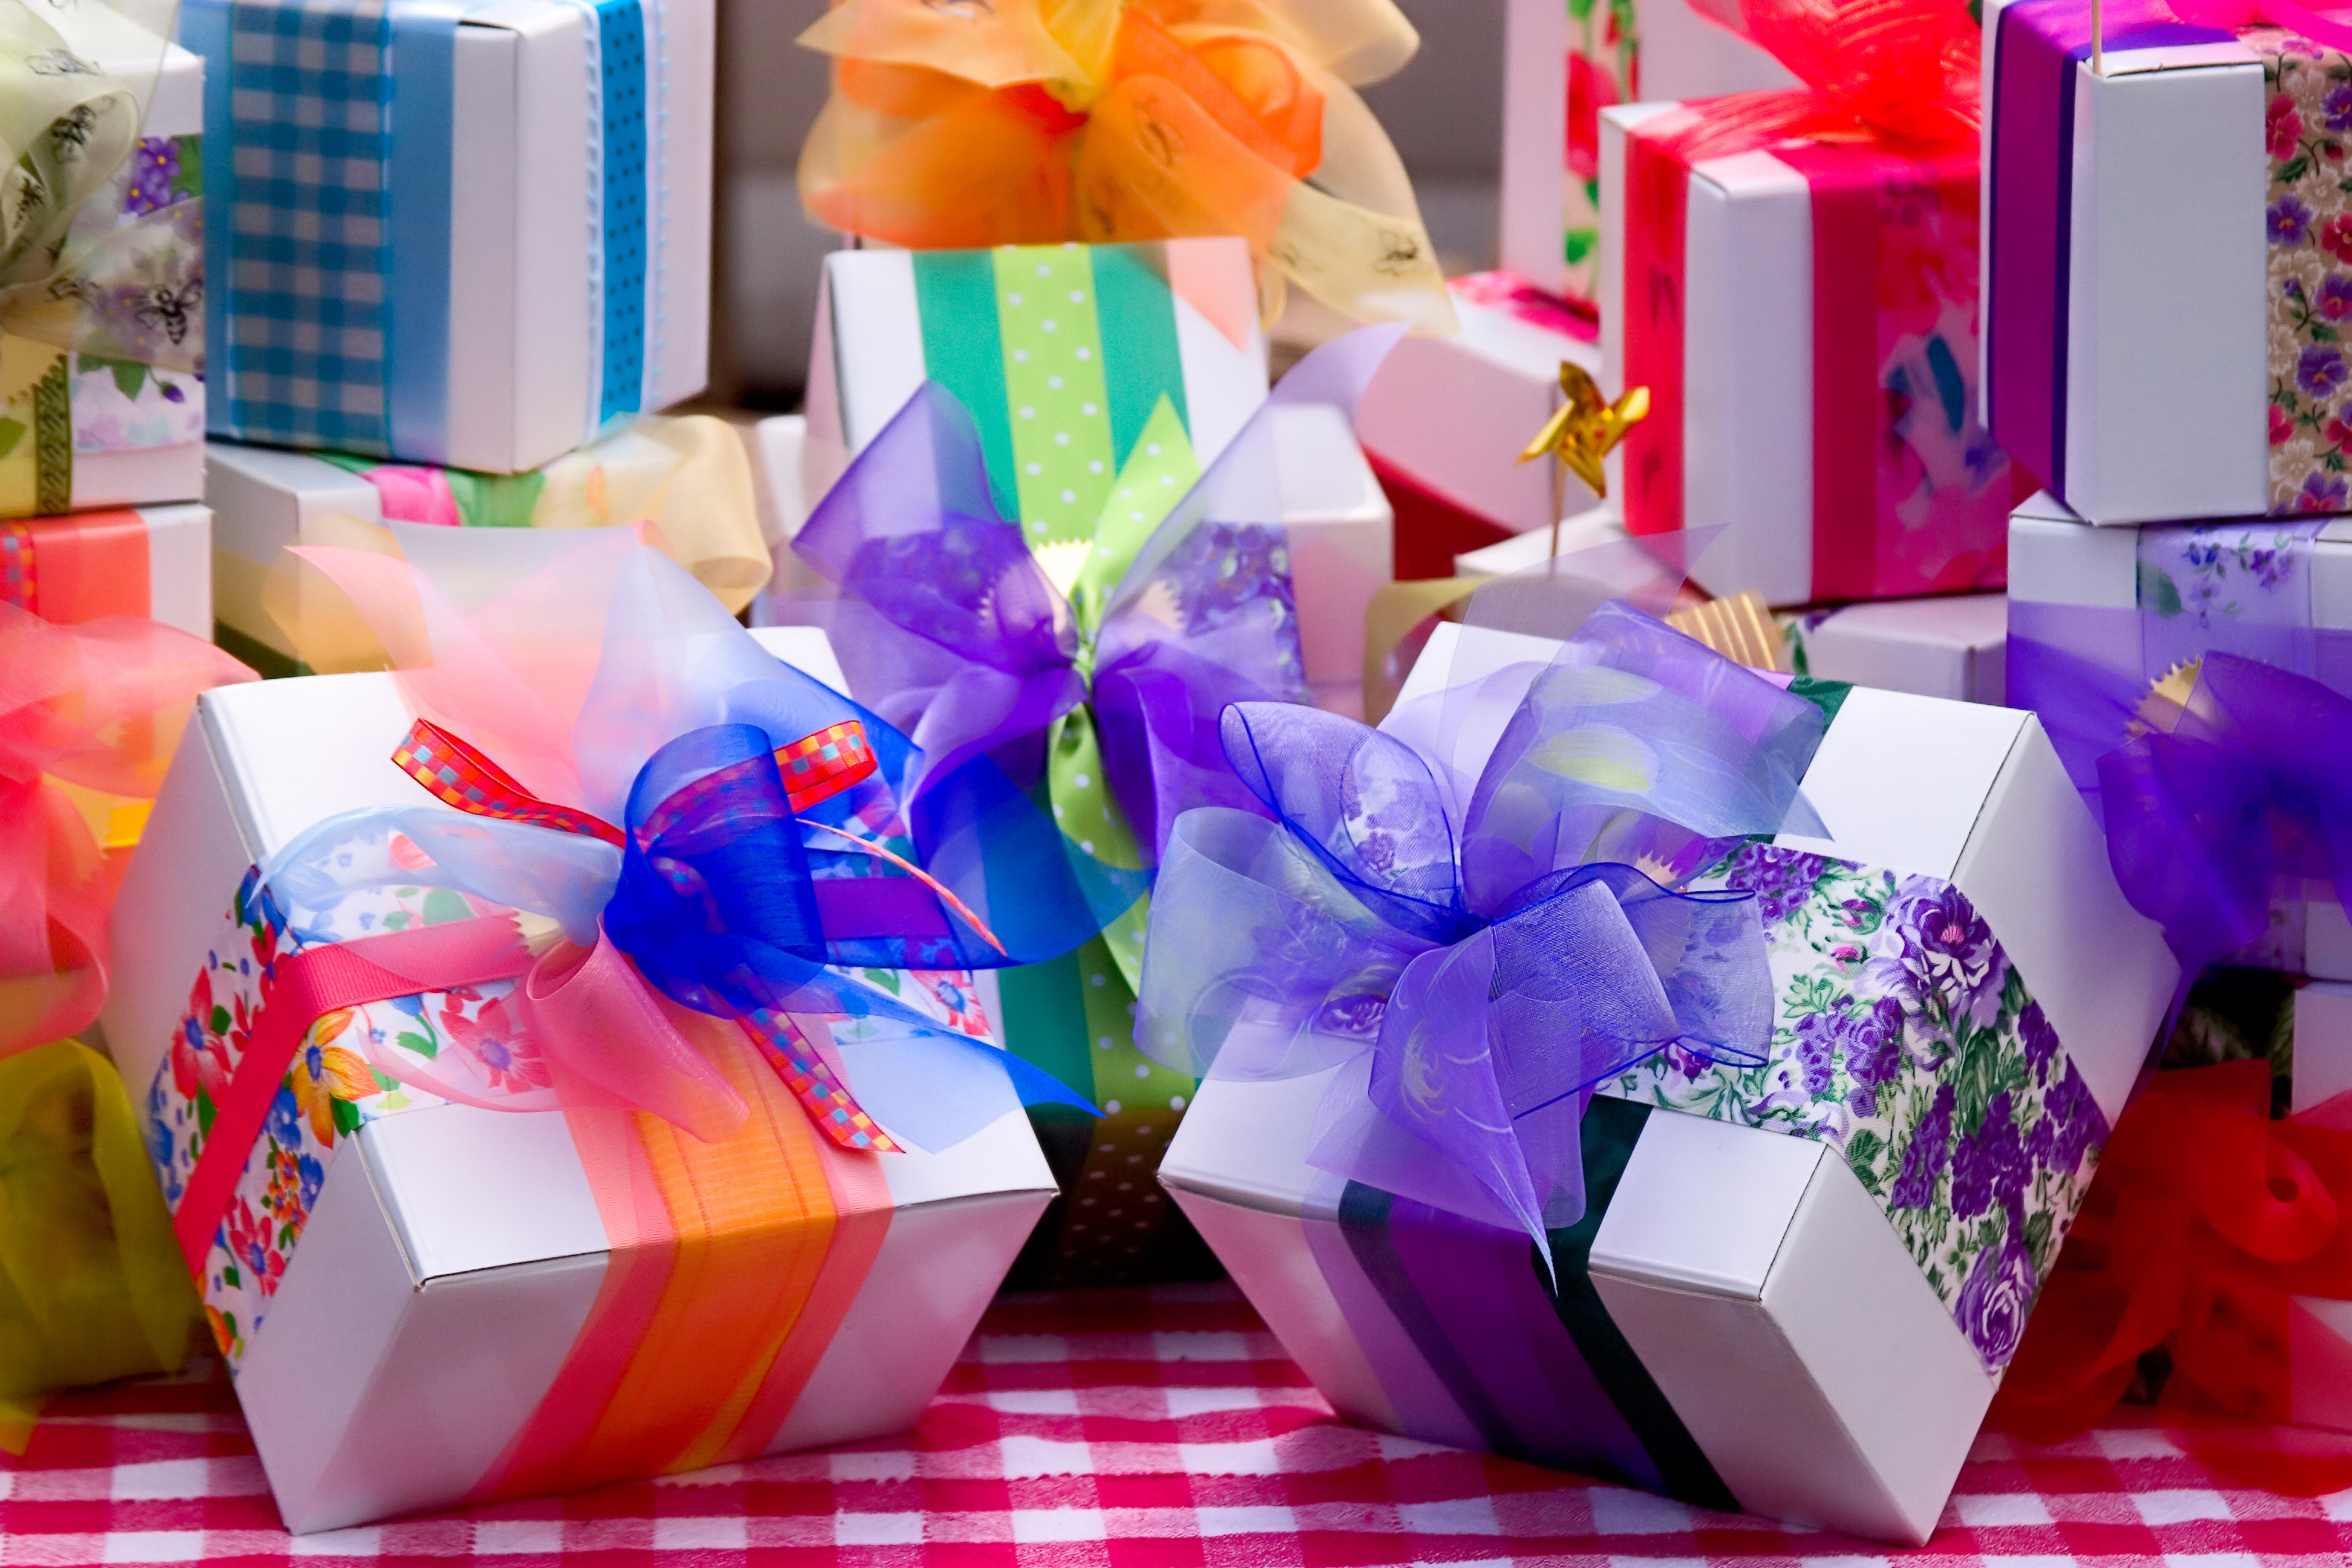 О подарках-впечатлениях. какие они бывают? | что и как дарить - энциклопедия идеи подарков